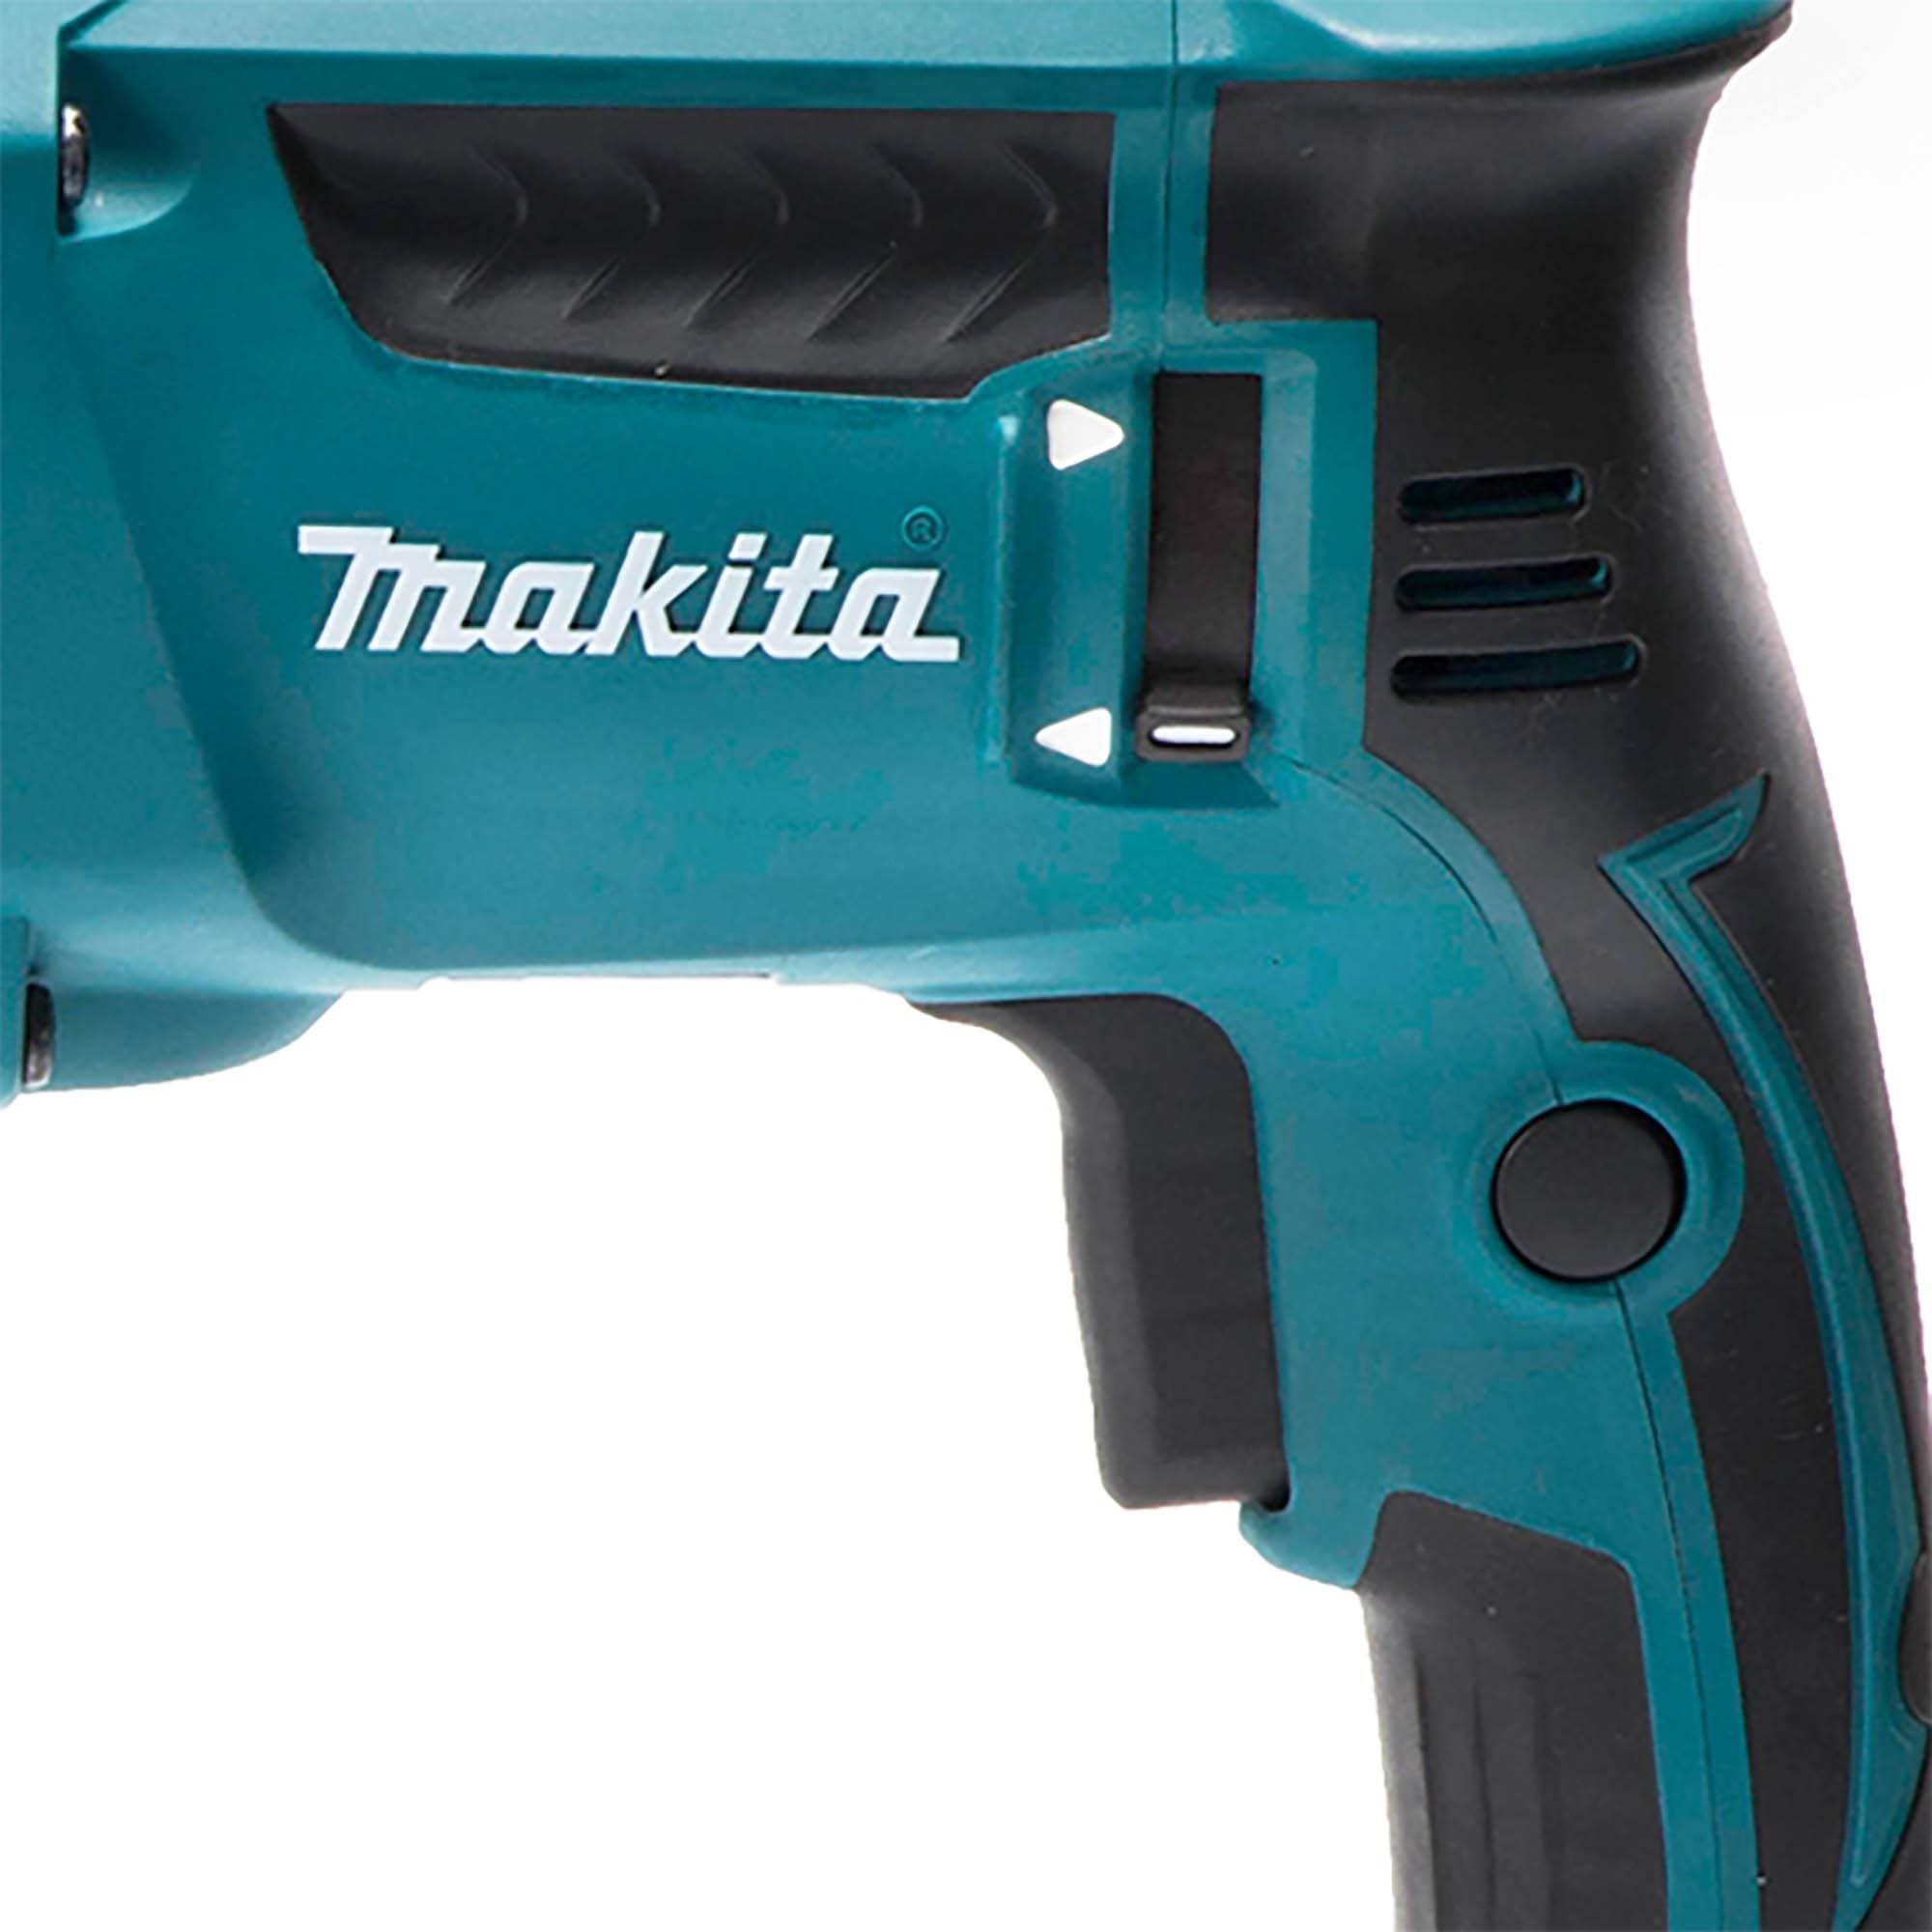 110V Makita HR2630 3 Mode SDS Rotary Hammer Drill 